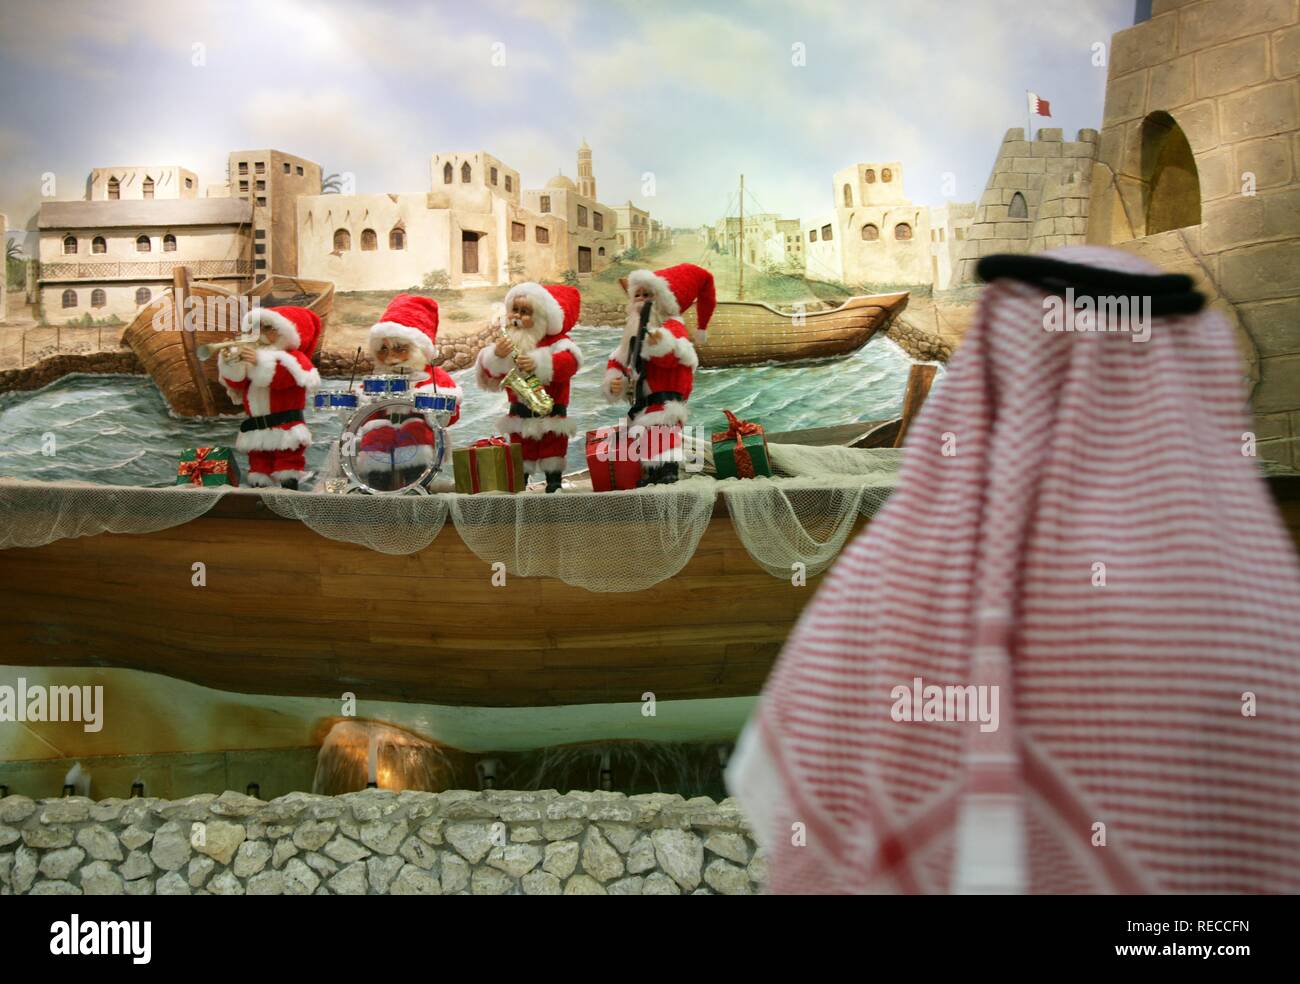 L'aéroport International, hall de départ, décoration de Noël, le Père Noël bande sur un dhow, capitale Manama, Royaume de Bahreïn Banque D'Images